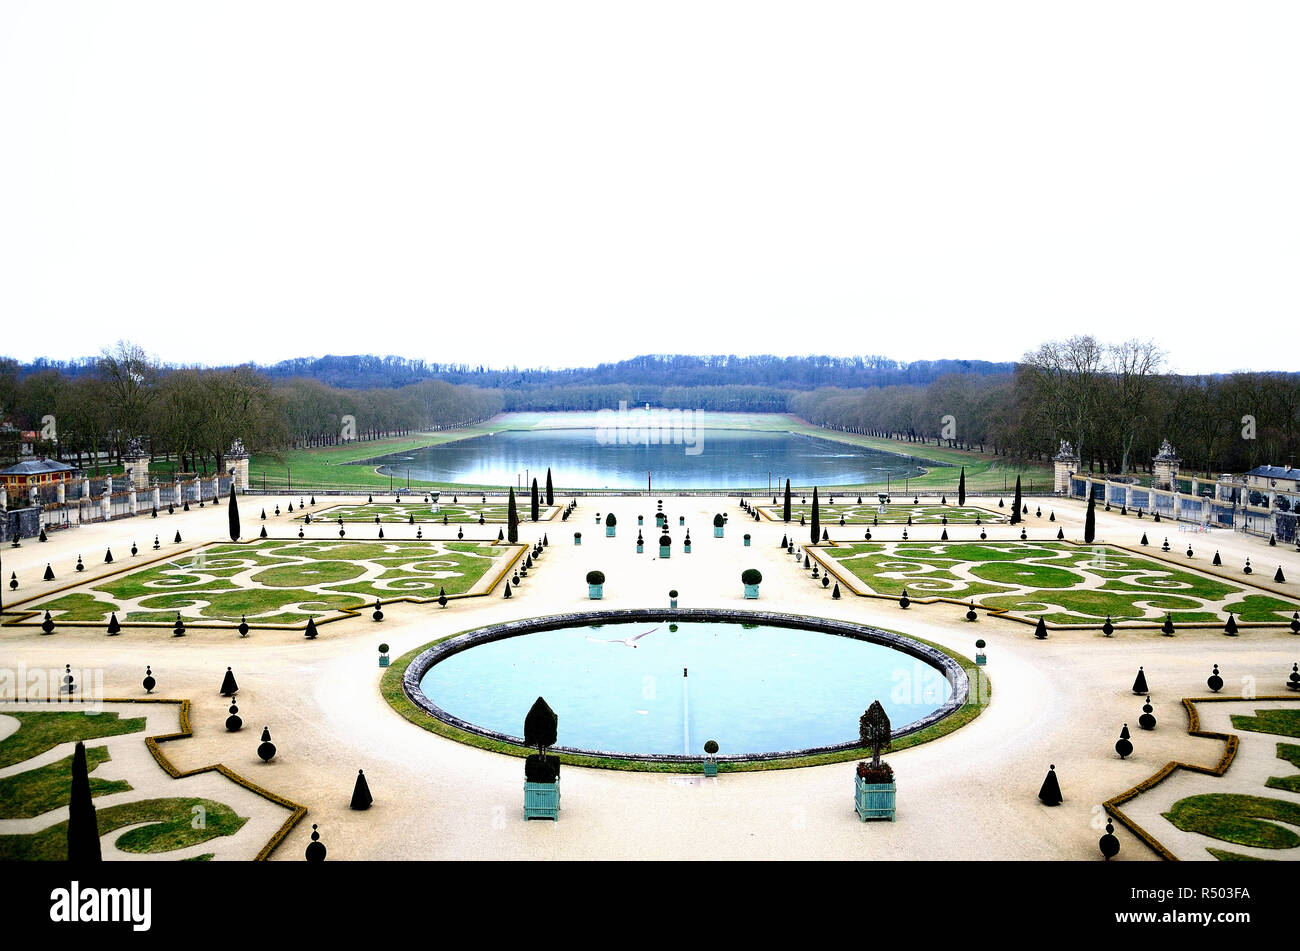 Jardins de Versailles par une froide journée d'hiver à Paris, France. L'eau gelée dans les fontaines. Encore une belle vue et symétrie Banque D'Images